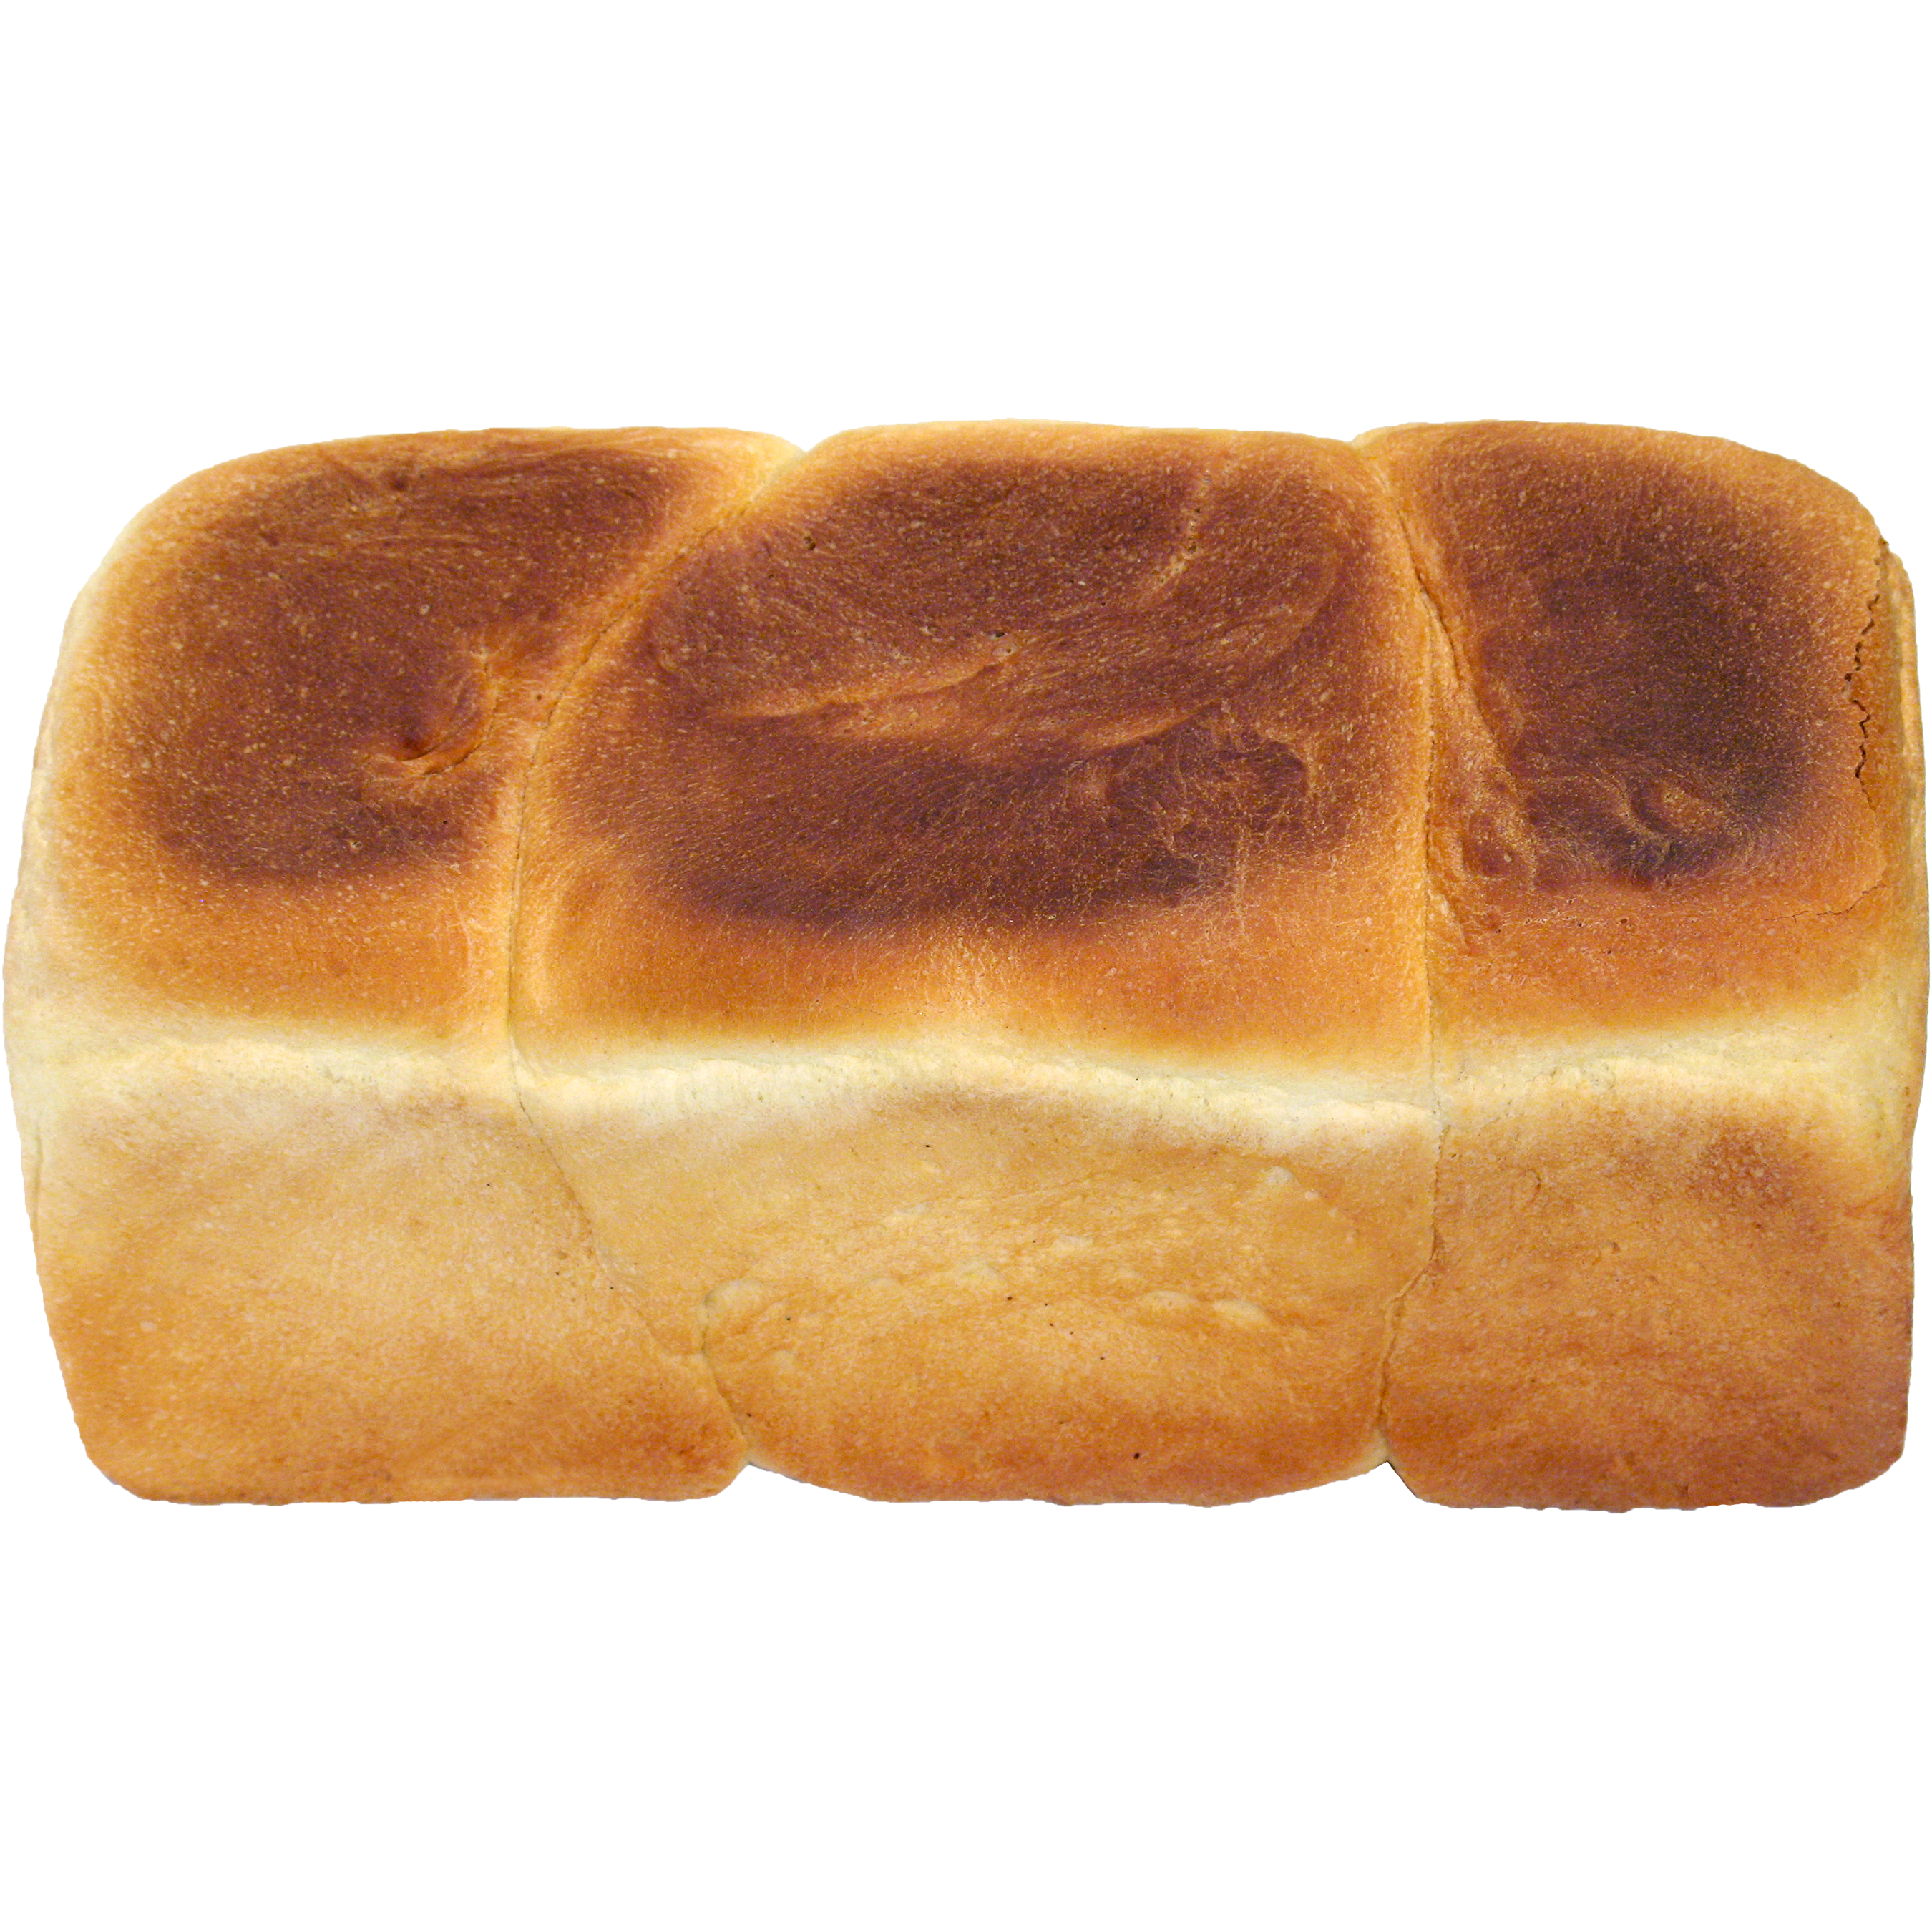 Bread Transparent Image